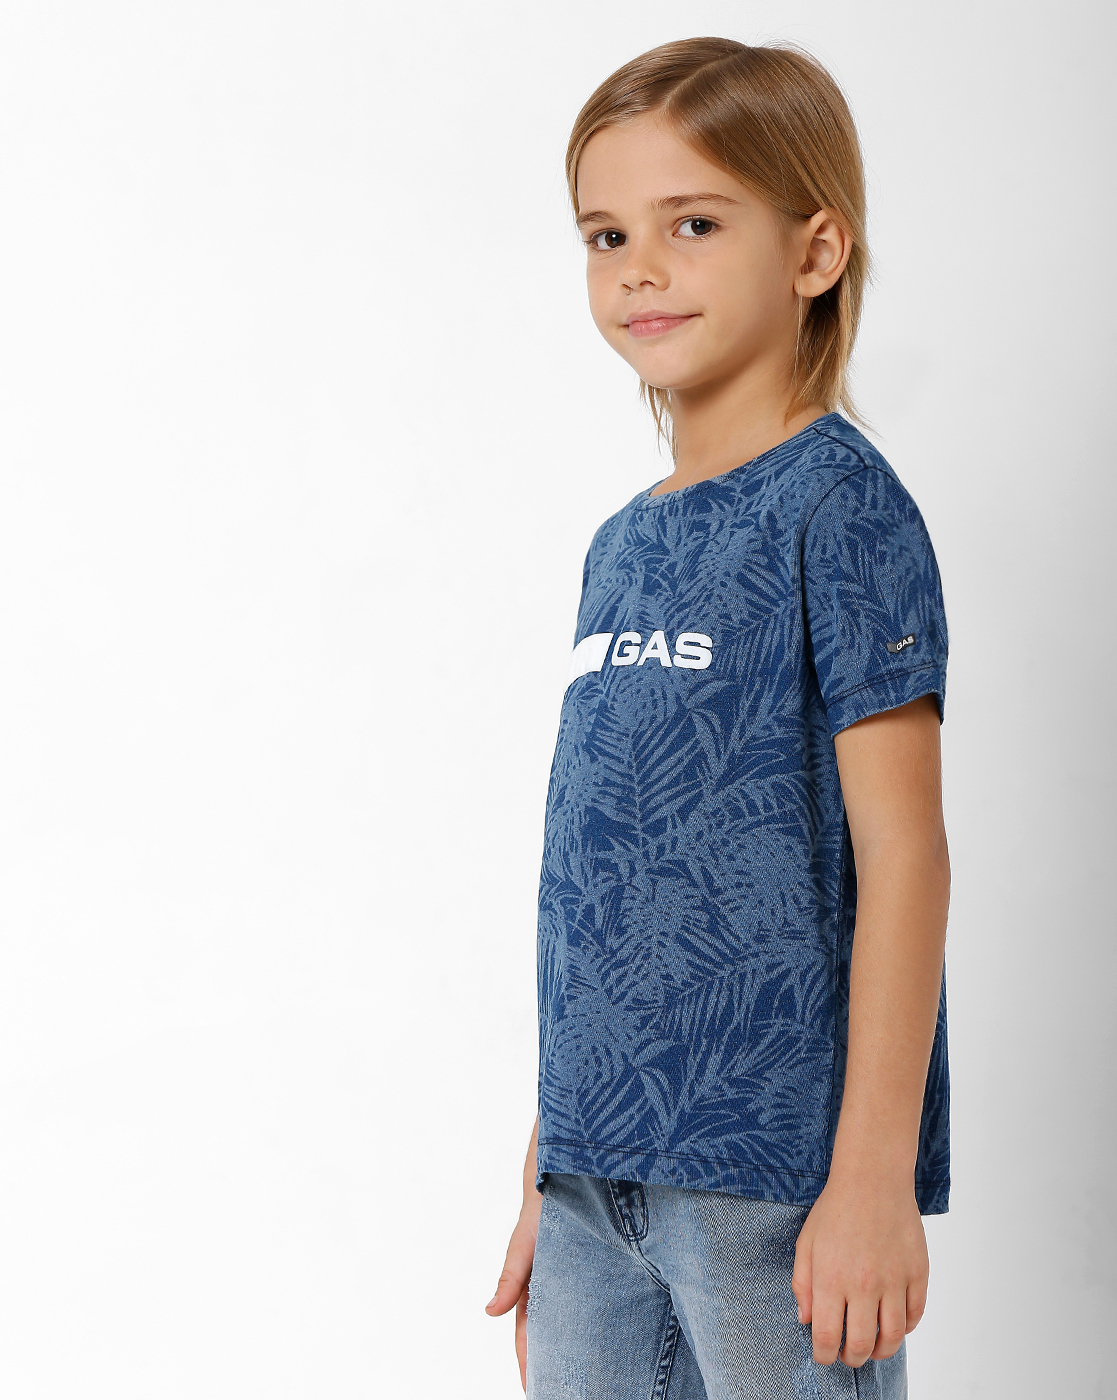 GAS KIDS Boys Printed Blue T-Shirt